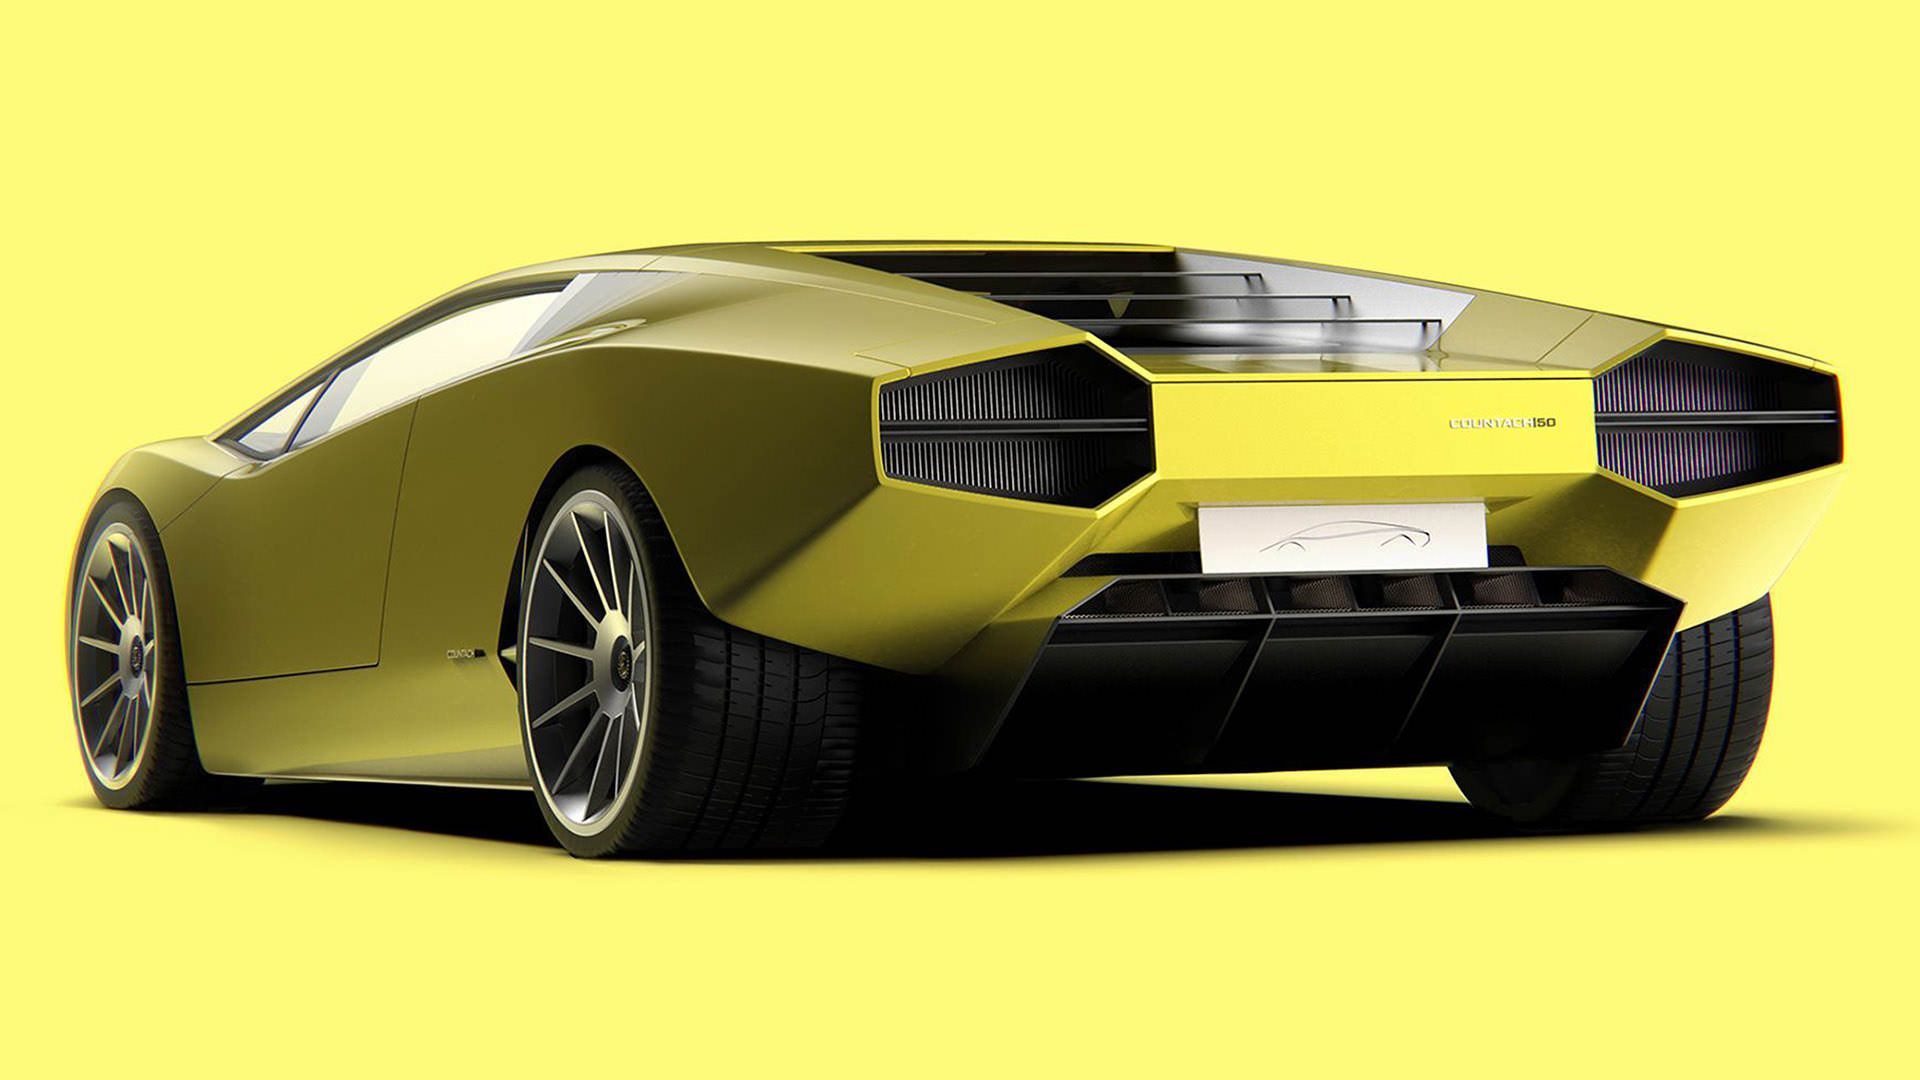 لامبورگینی کانتاش 50 اماجو / Lamborghini Countach 50 Omaggio زرد رنگ